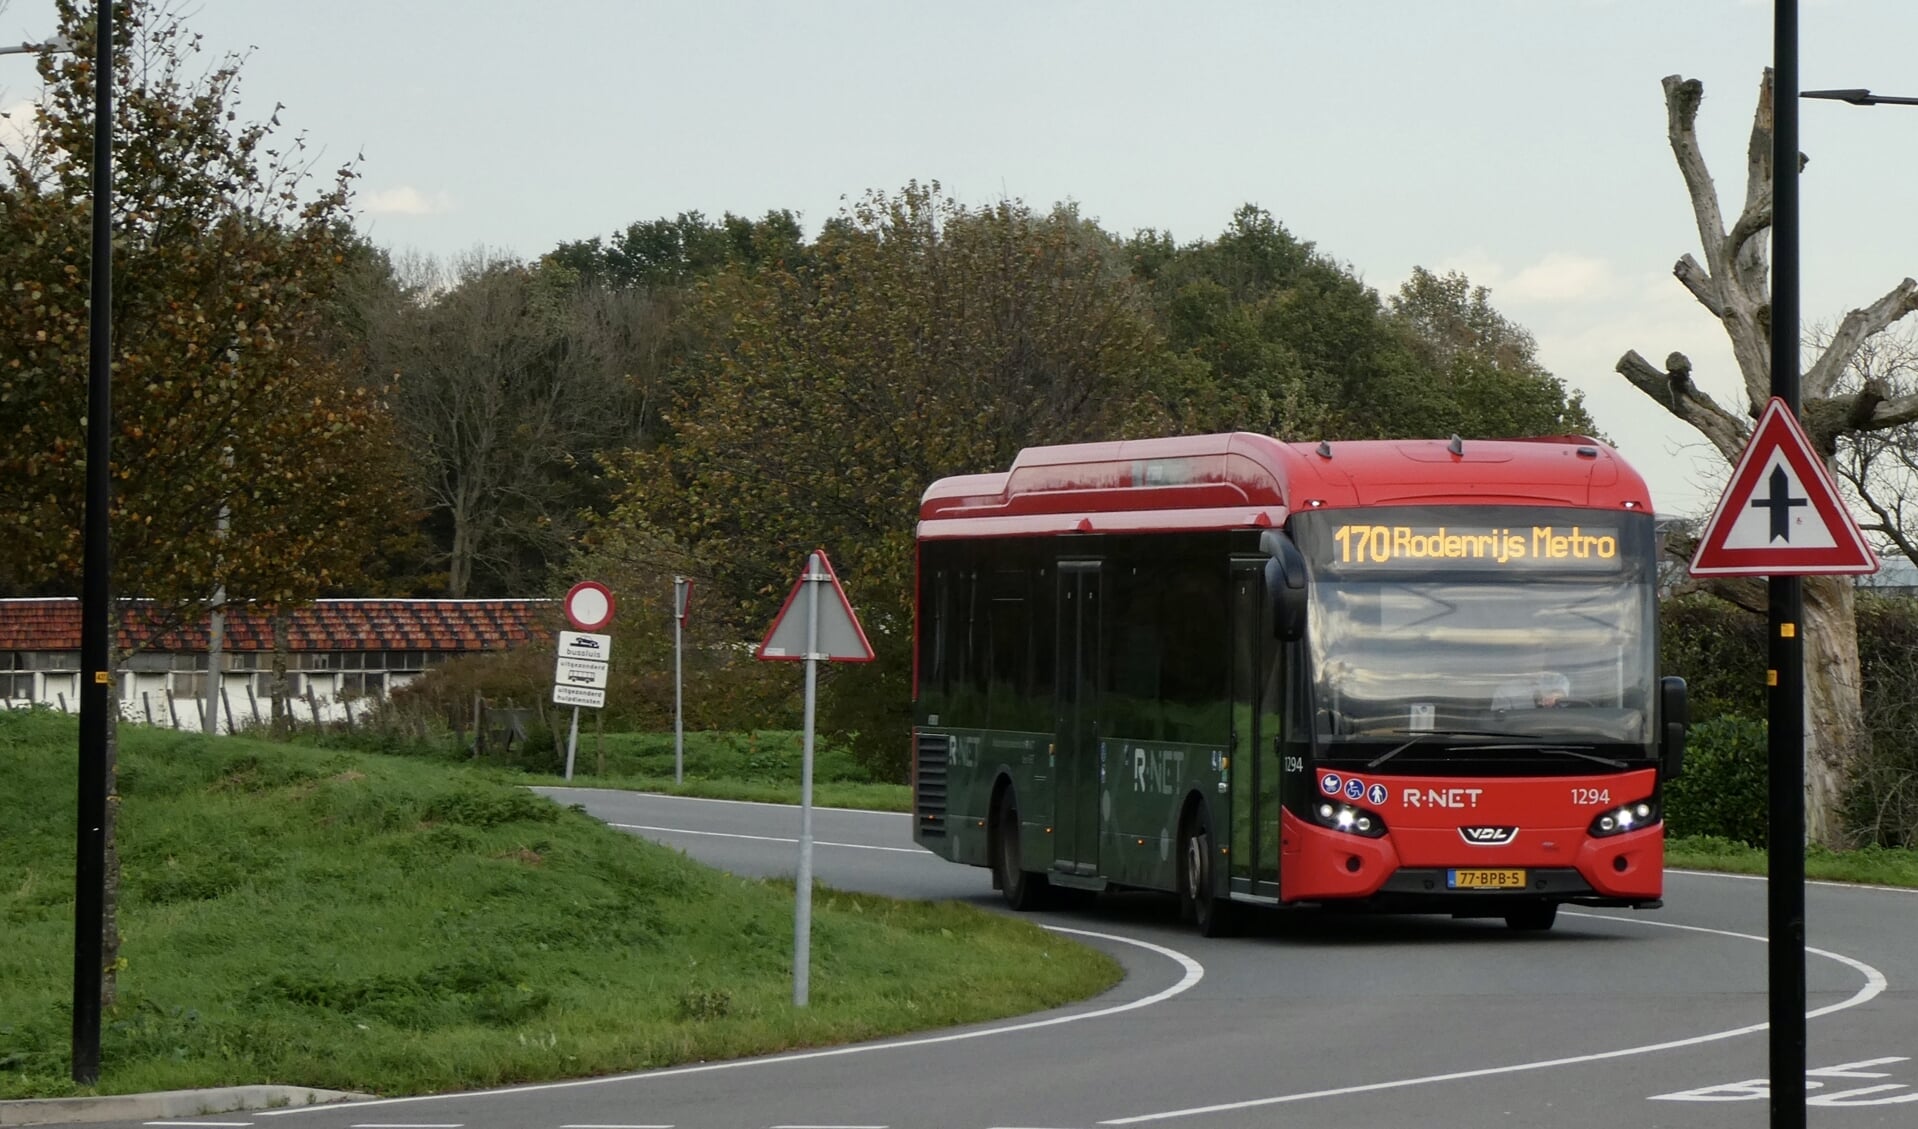 Verantwoordelijk persoon stoom verkoopplan Aantal elektrische bussen bij RET in twee jaar tijd verdubbeld - Adverteren  Lansingerland | Hart van Lansingerland | Krant en Online